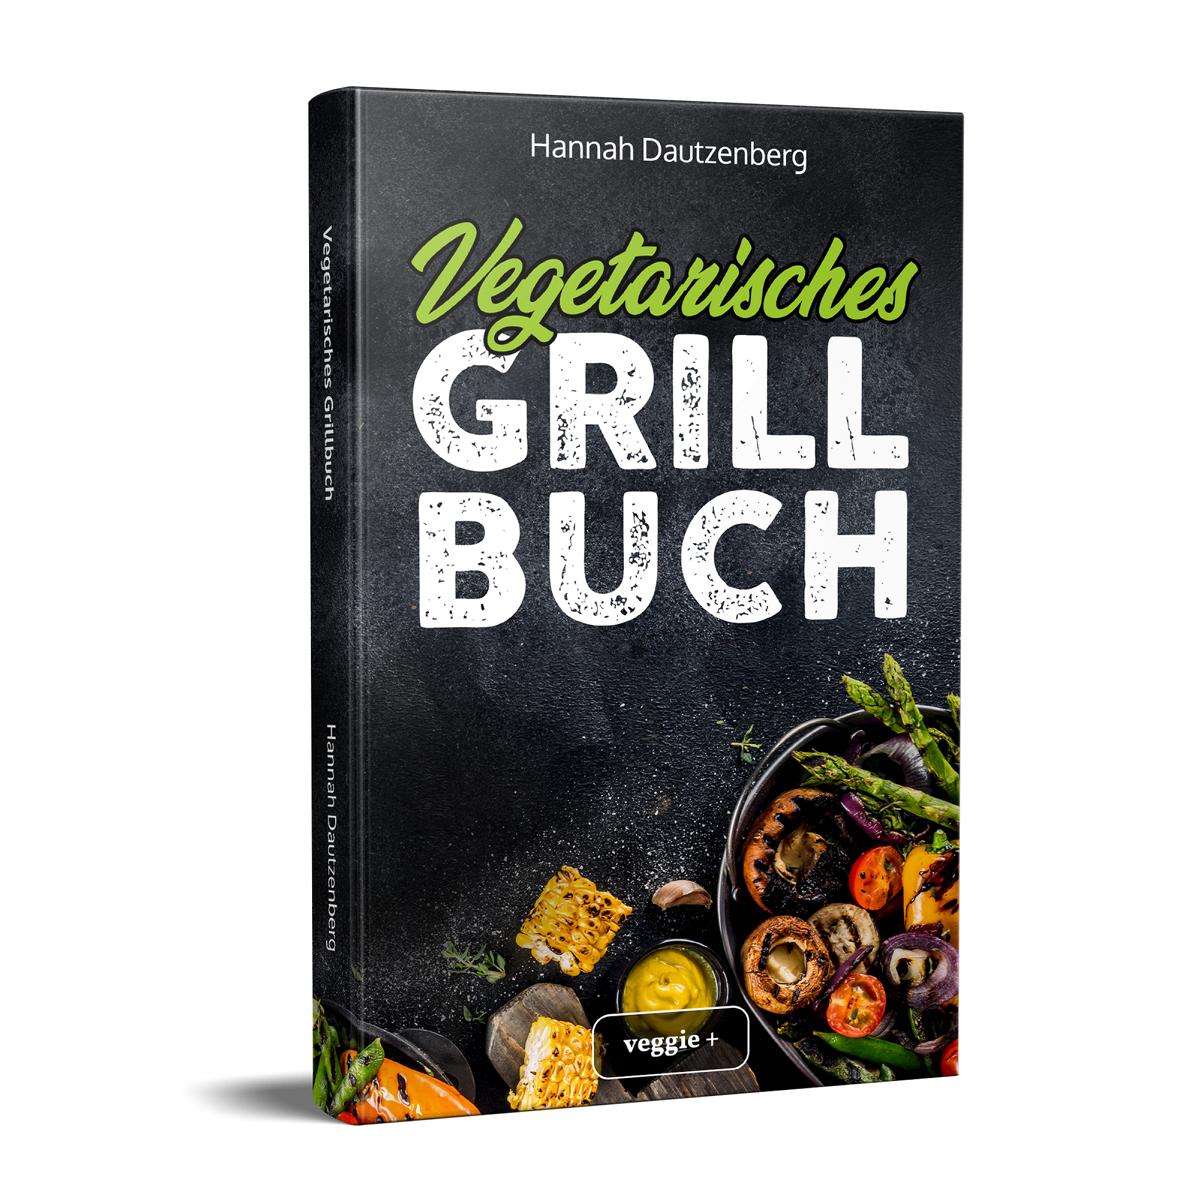 Vegetarisches Grillbuch: Das große vegetarische Grill-Kochbuch für leckere Grillgerichte ohne Fleisch von Hannah Dautzenberg im veggie + Verlag